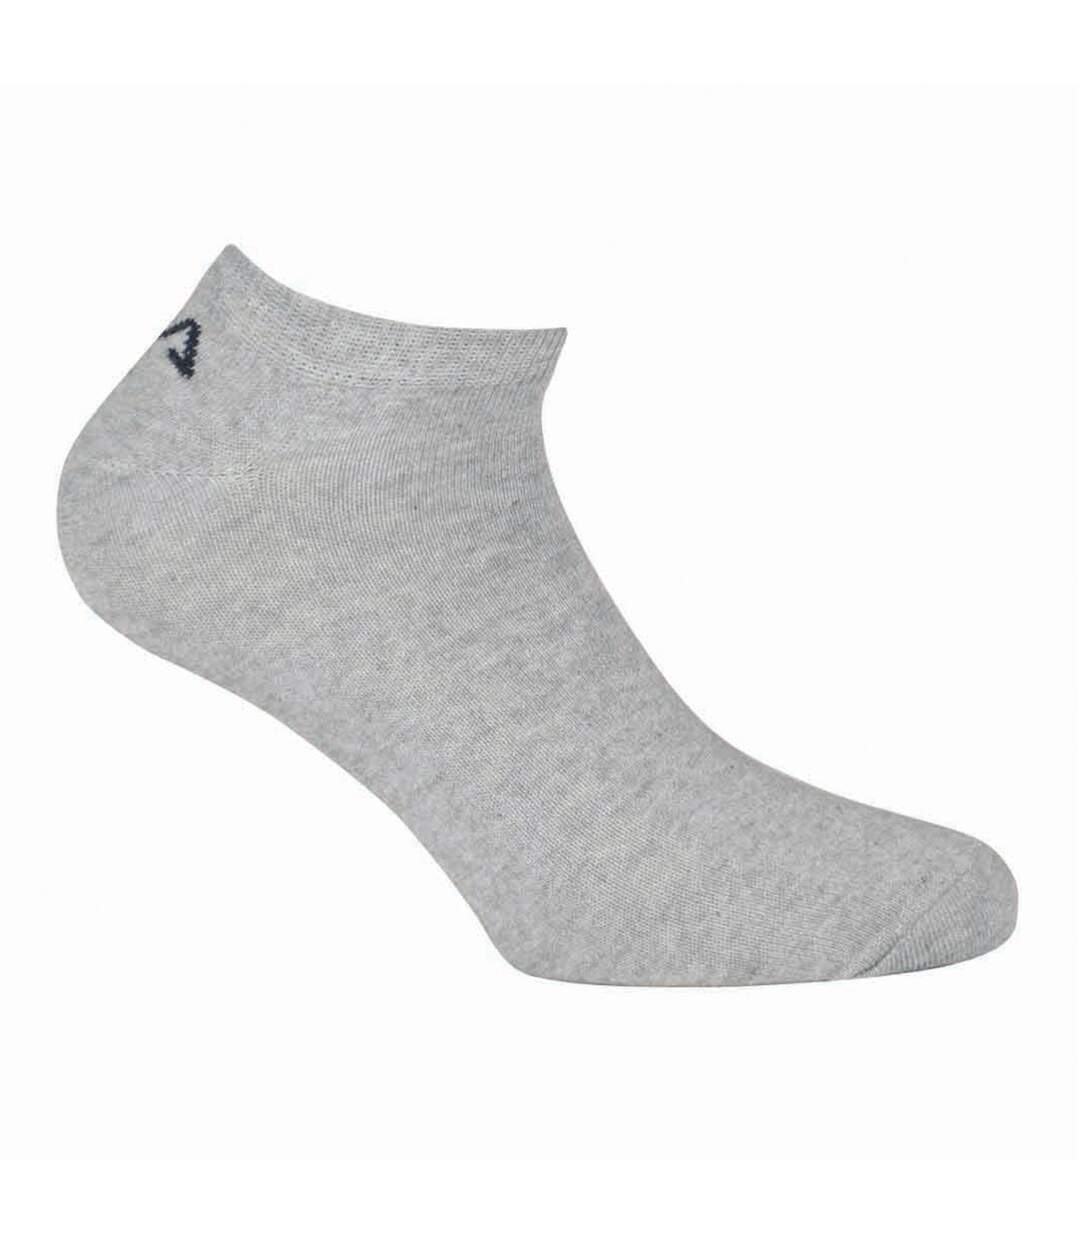 Chaussette Homme Respirantes - Lot de 12 - Socquettes Sportswear Homme, Ajustement Parfait & Maille Aérée